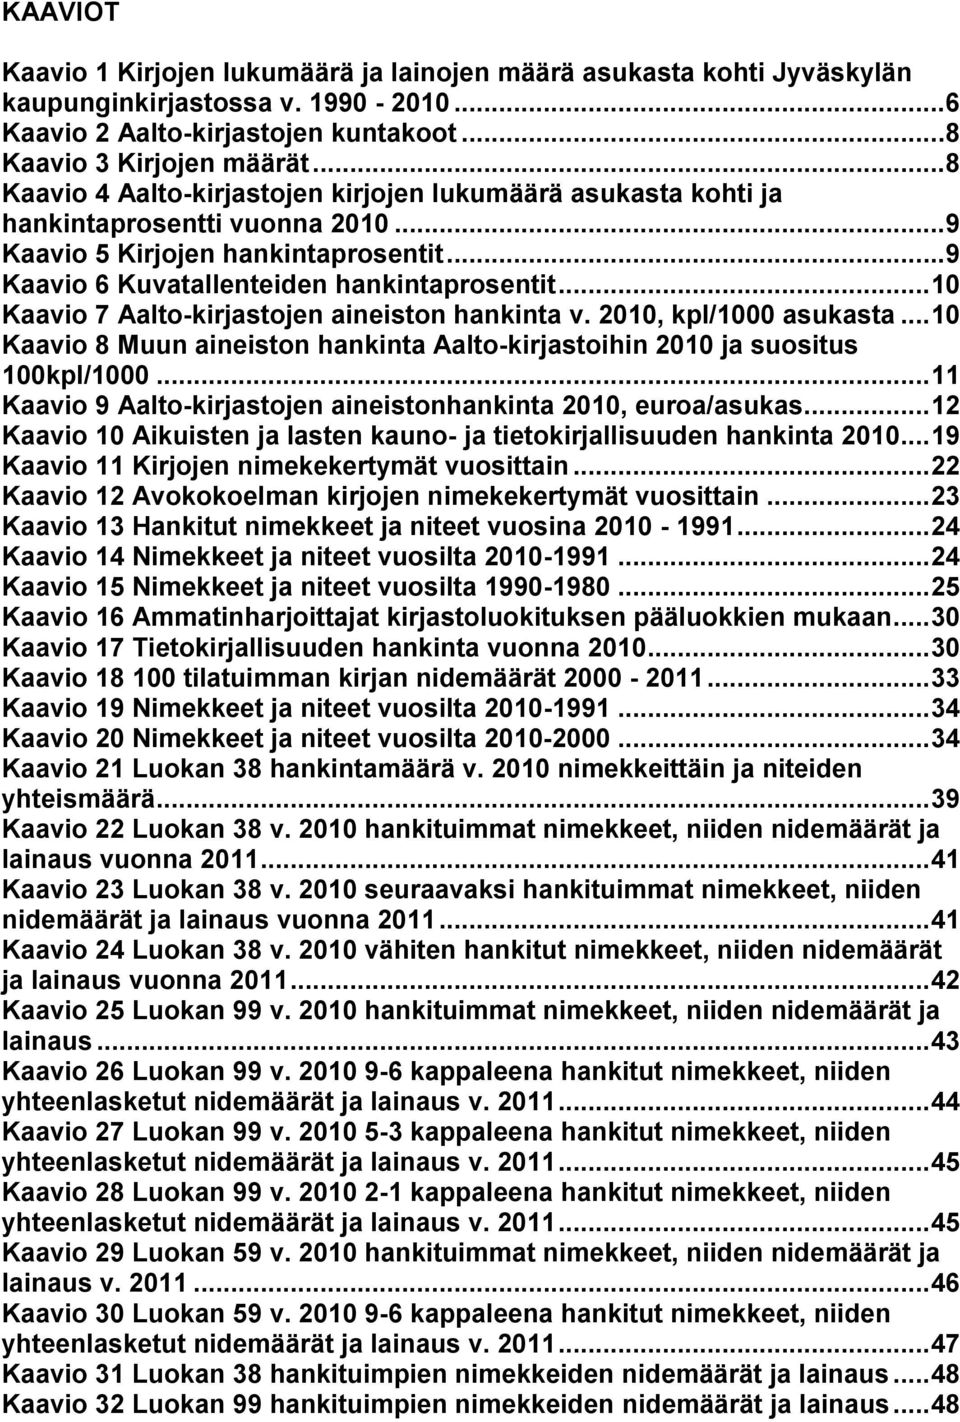 .. 1 Kaavio 7 Aalto-kirjastojen aineiston hankinta v. 21, kpl/1 asukasta... 1 Kaavio 8 Muun aineiston hankinta Aalto-kirjastoihin 21 ja suositus 1kpl/1.